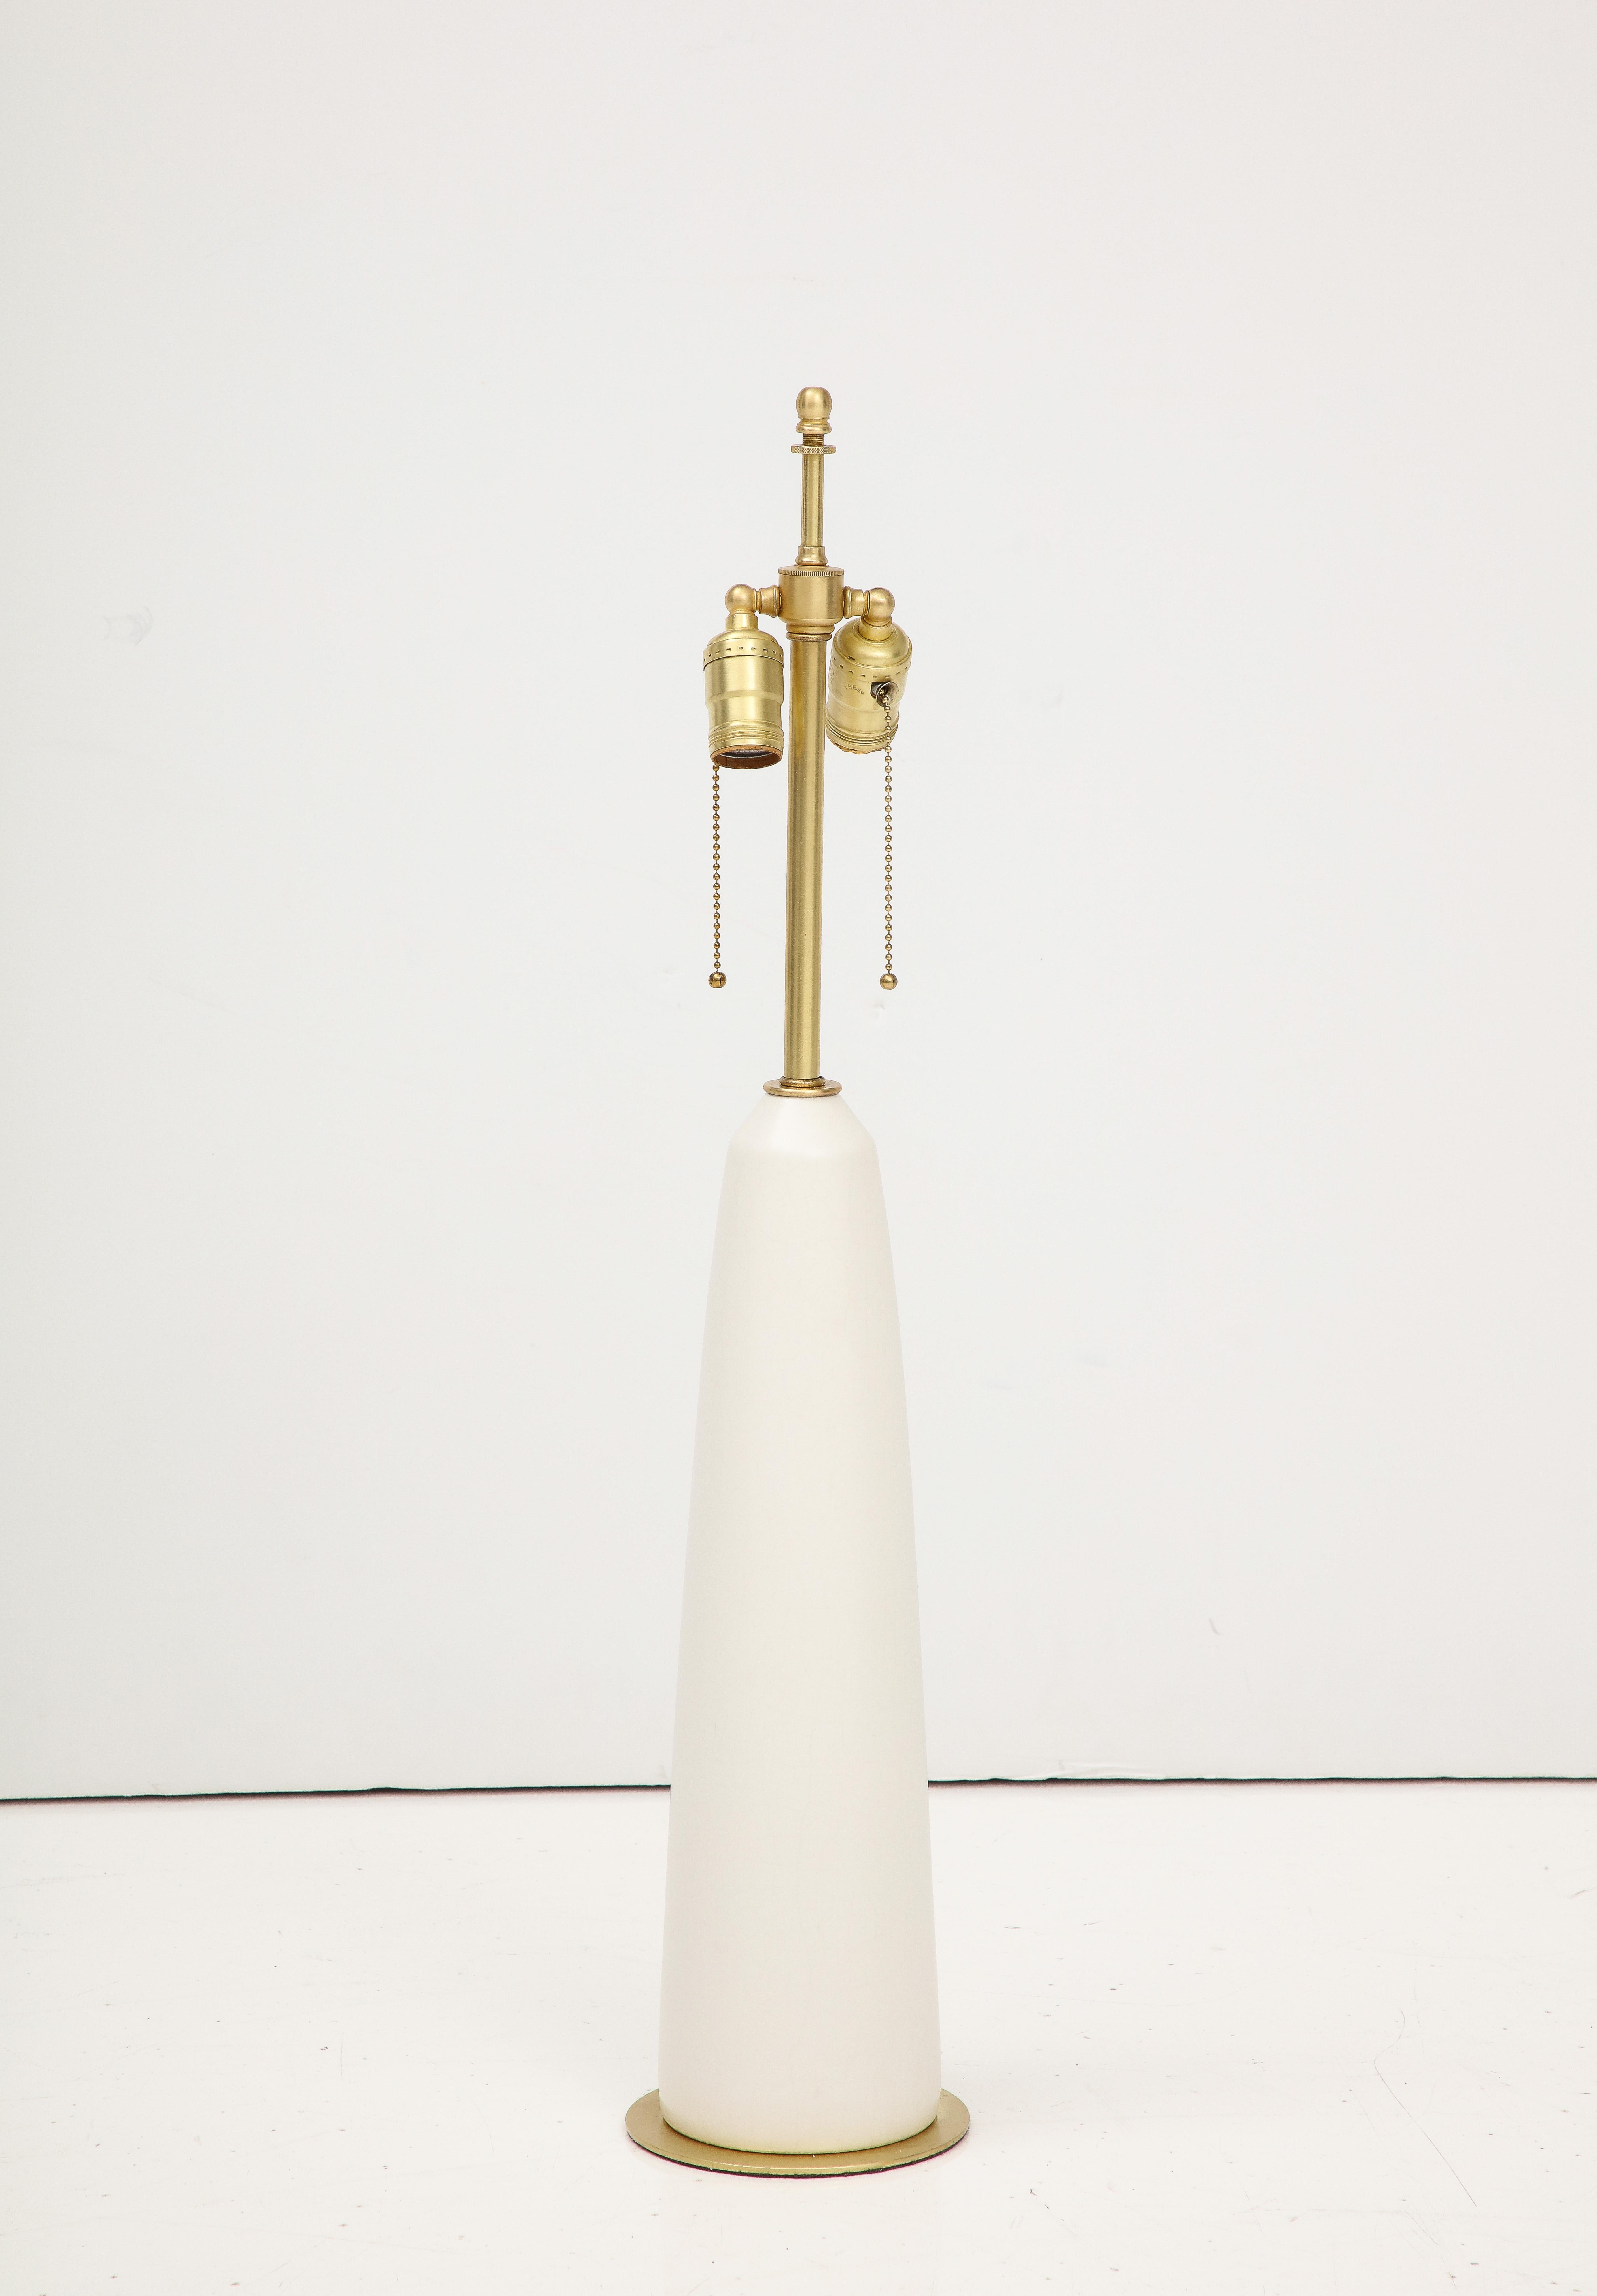 Lampe de table des années 1960 en laiton et céramique par Stewart Ross James, en état vintage avec usure mineure et patine due à l'âge et à l'utilisation, nouvellement reconnectée et prête à l'emploi.